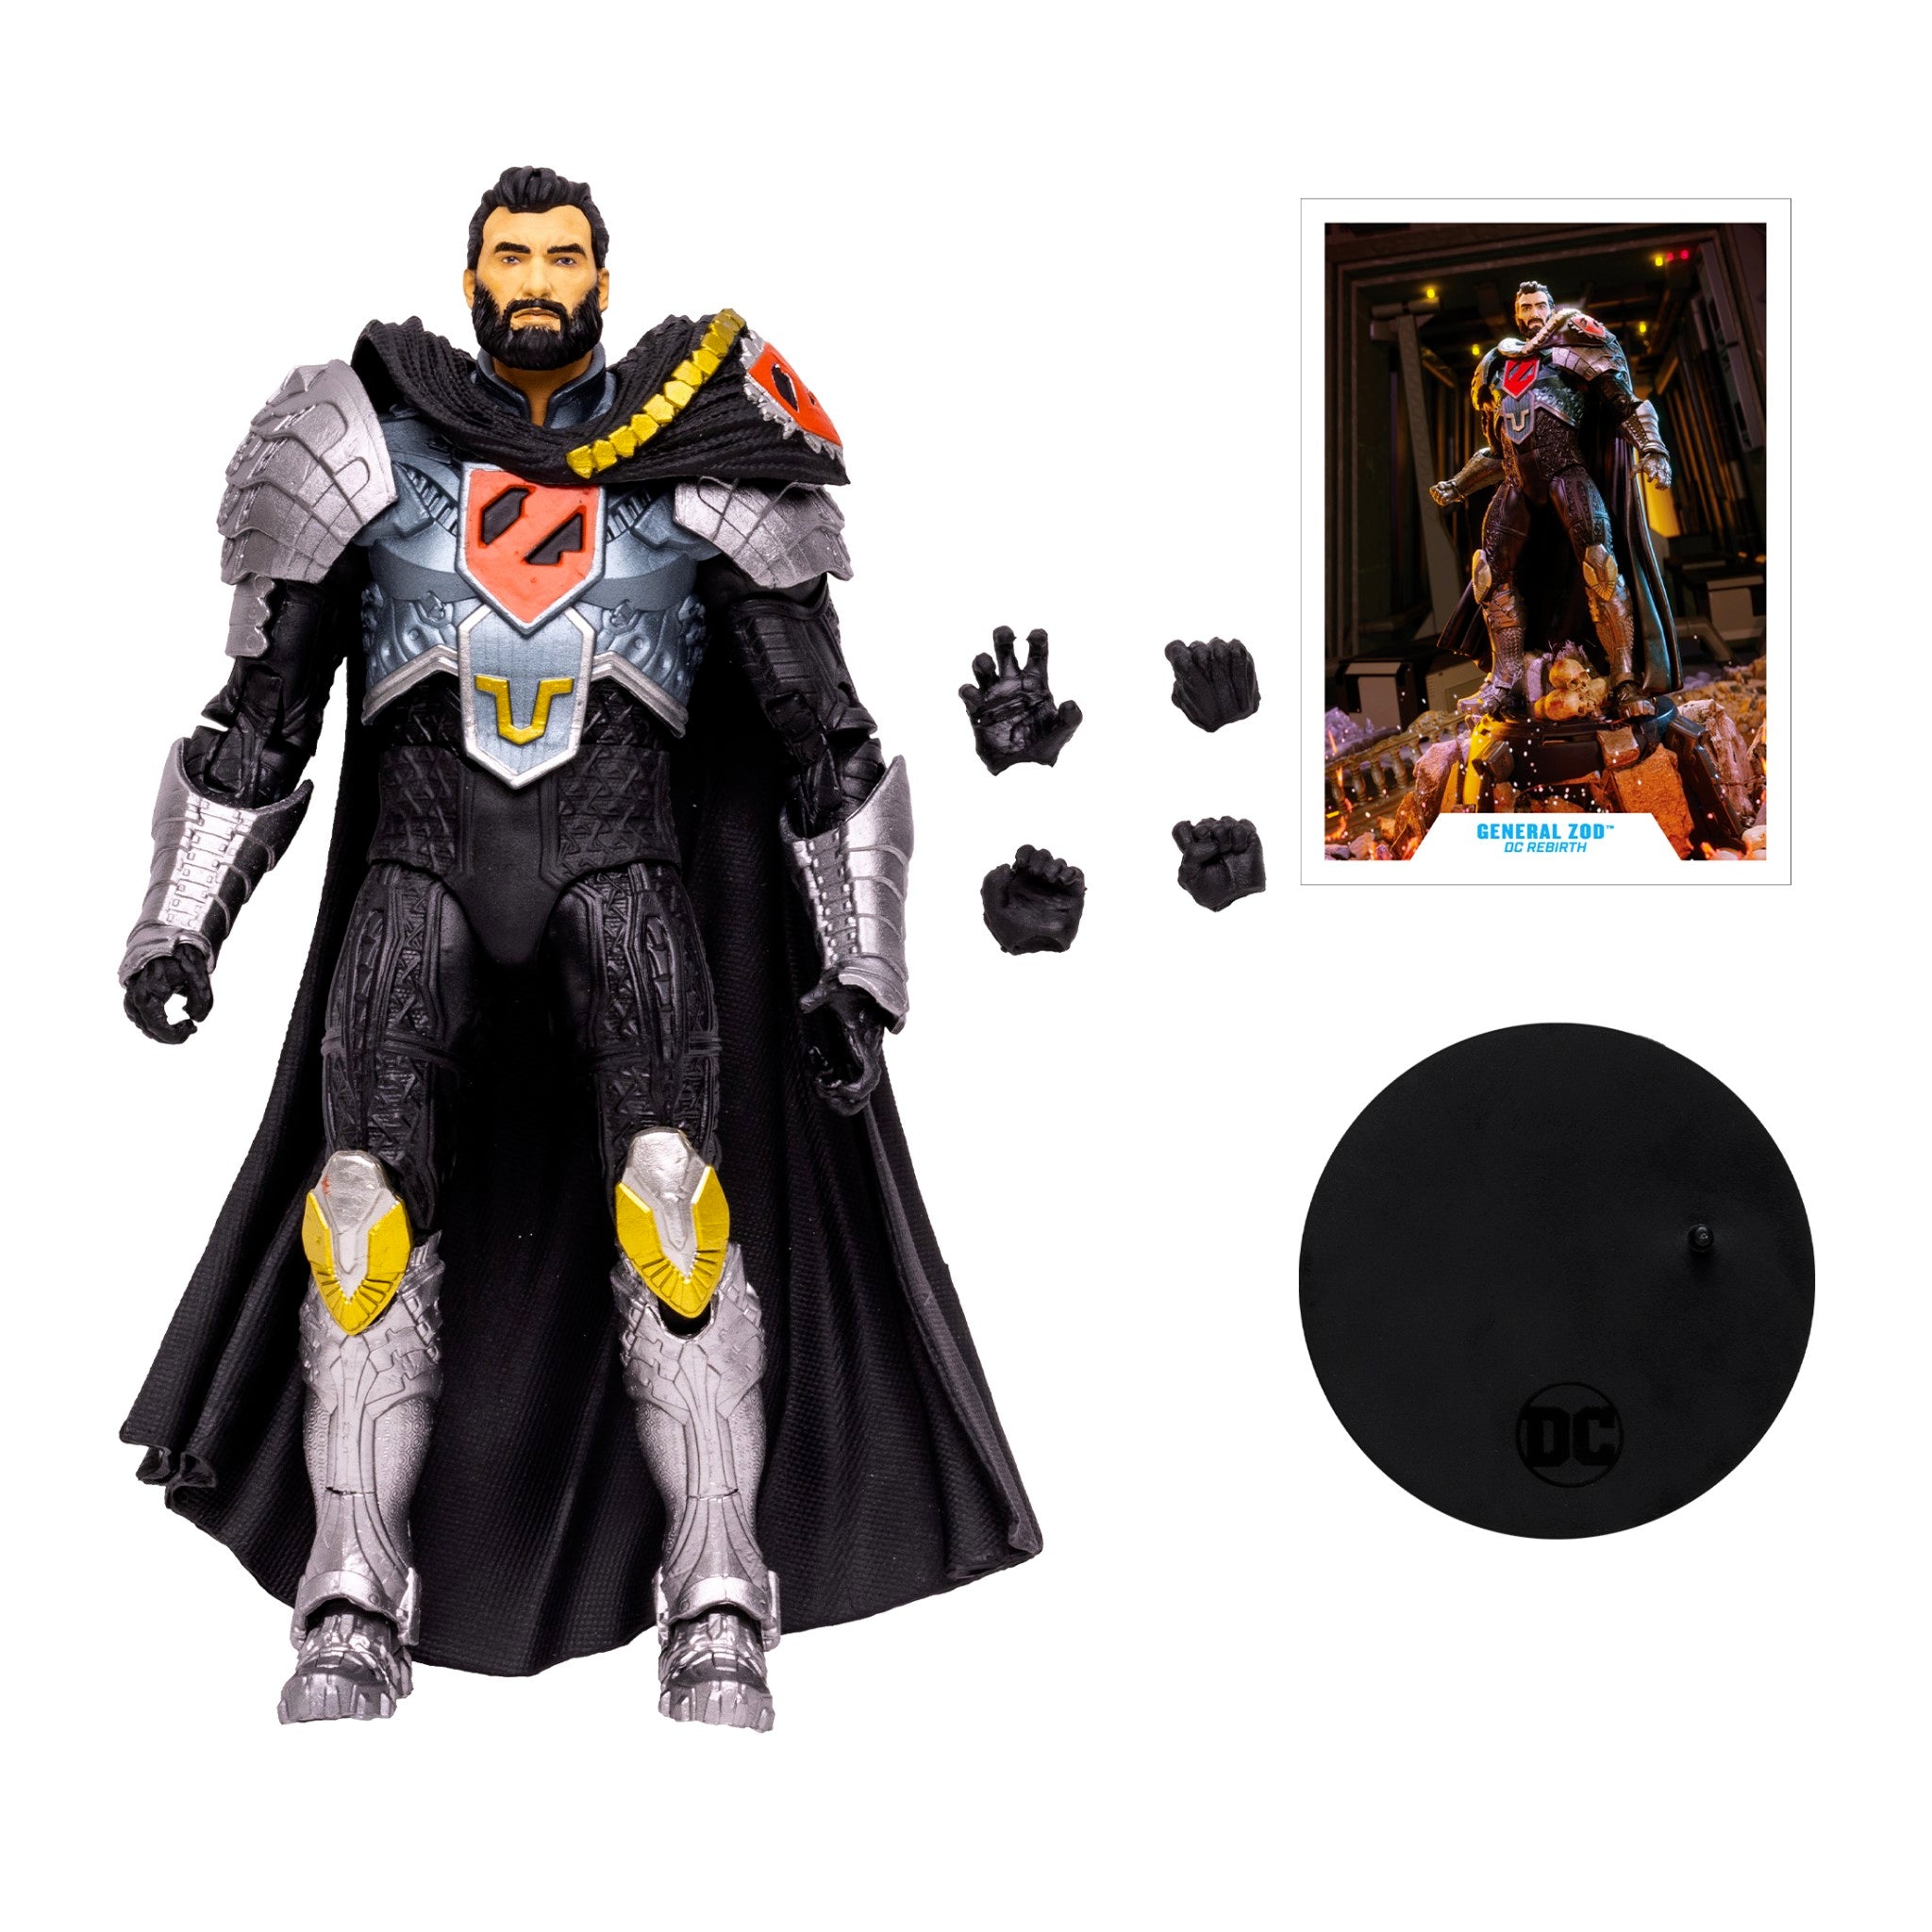 DC Multiverse DC Rebirth General Zod - McFarlane Toys